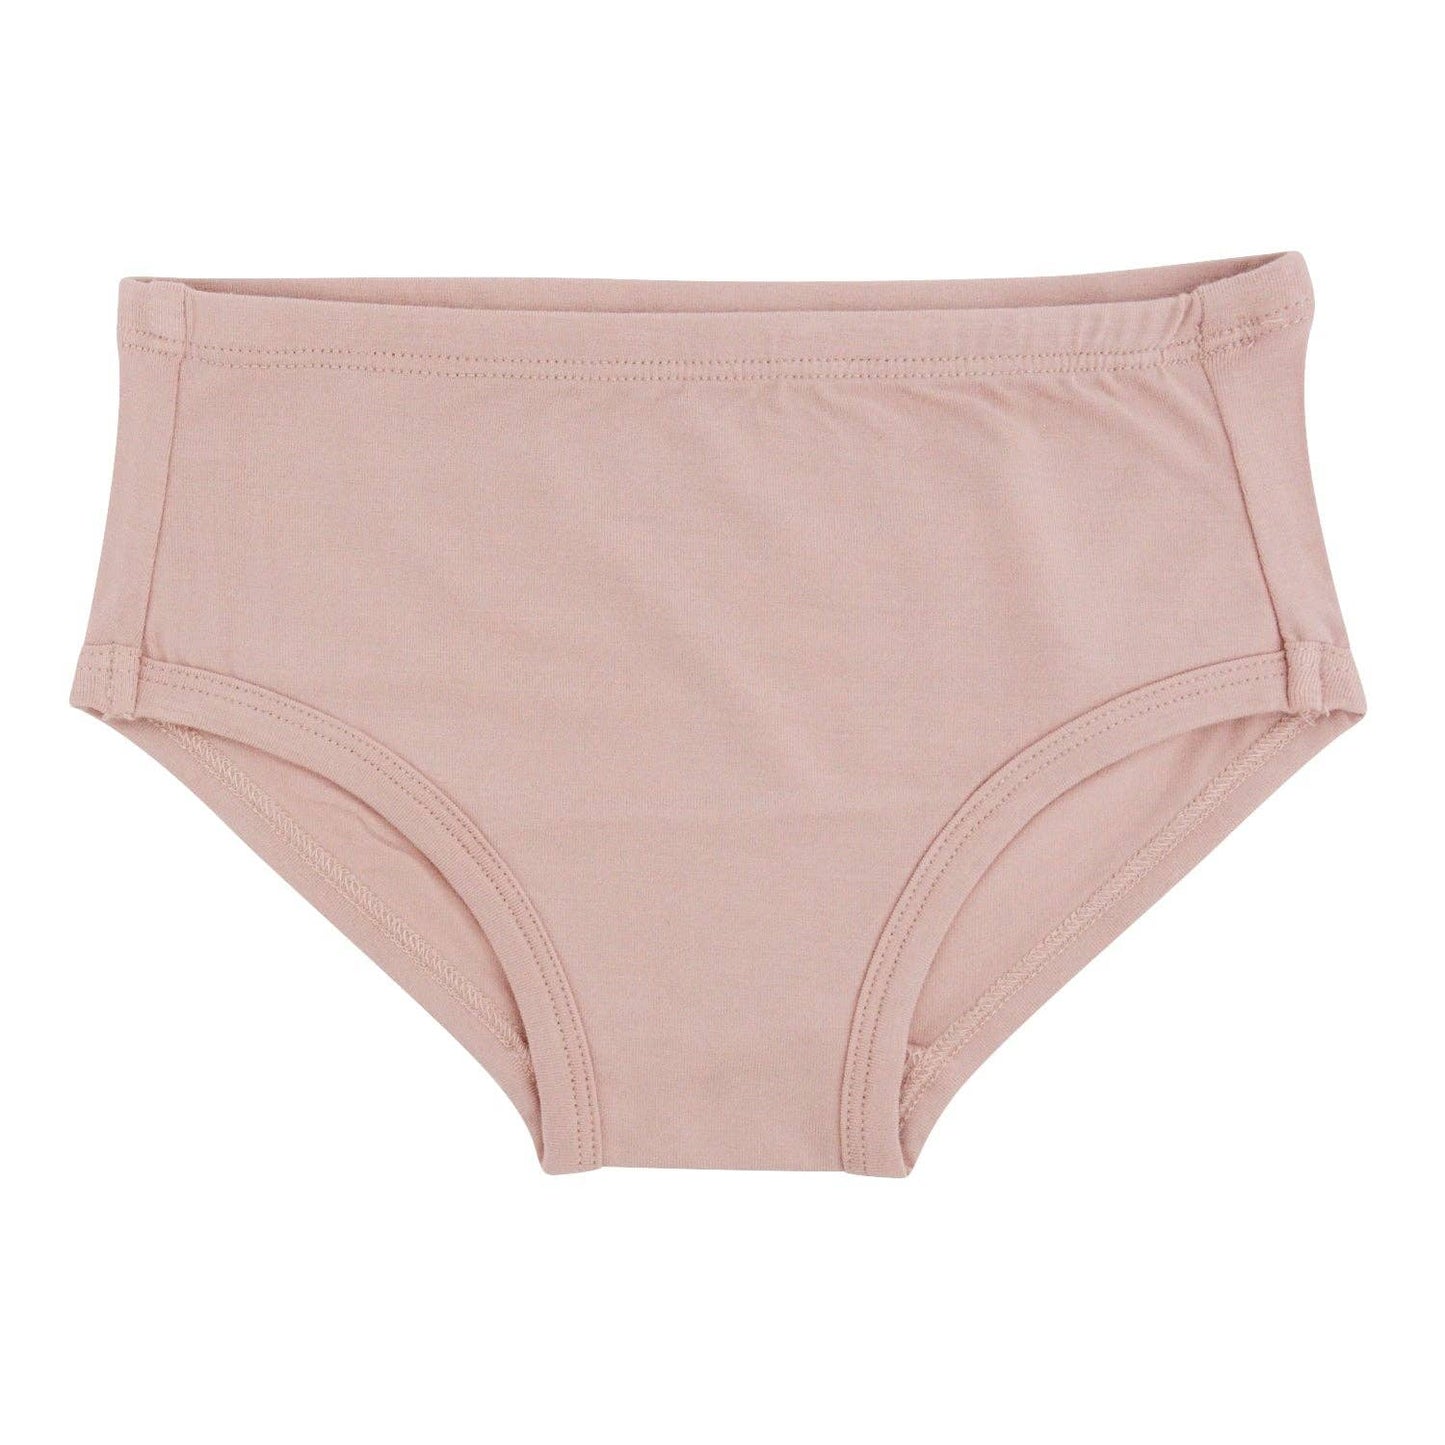 Girl's Underwear - Dusty Pink